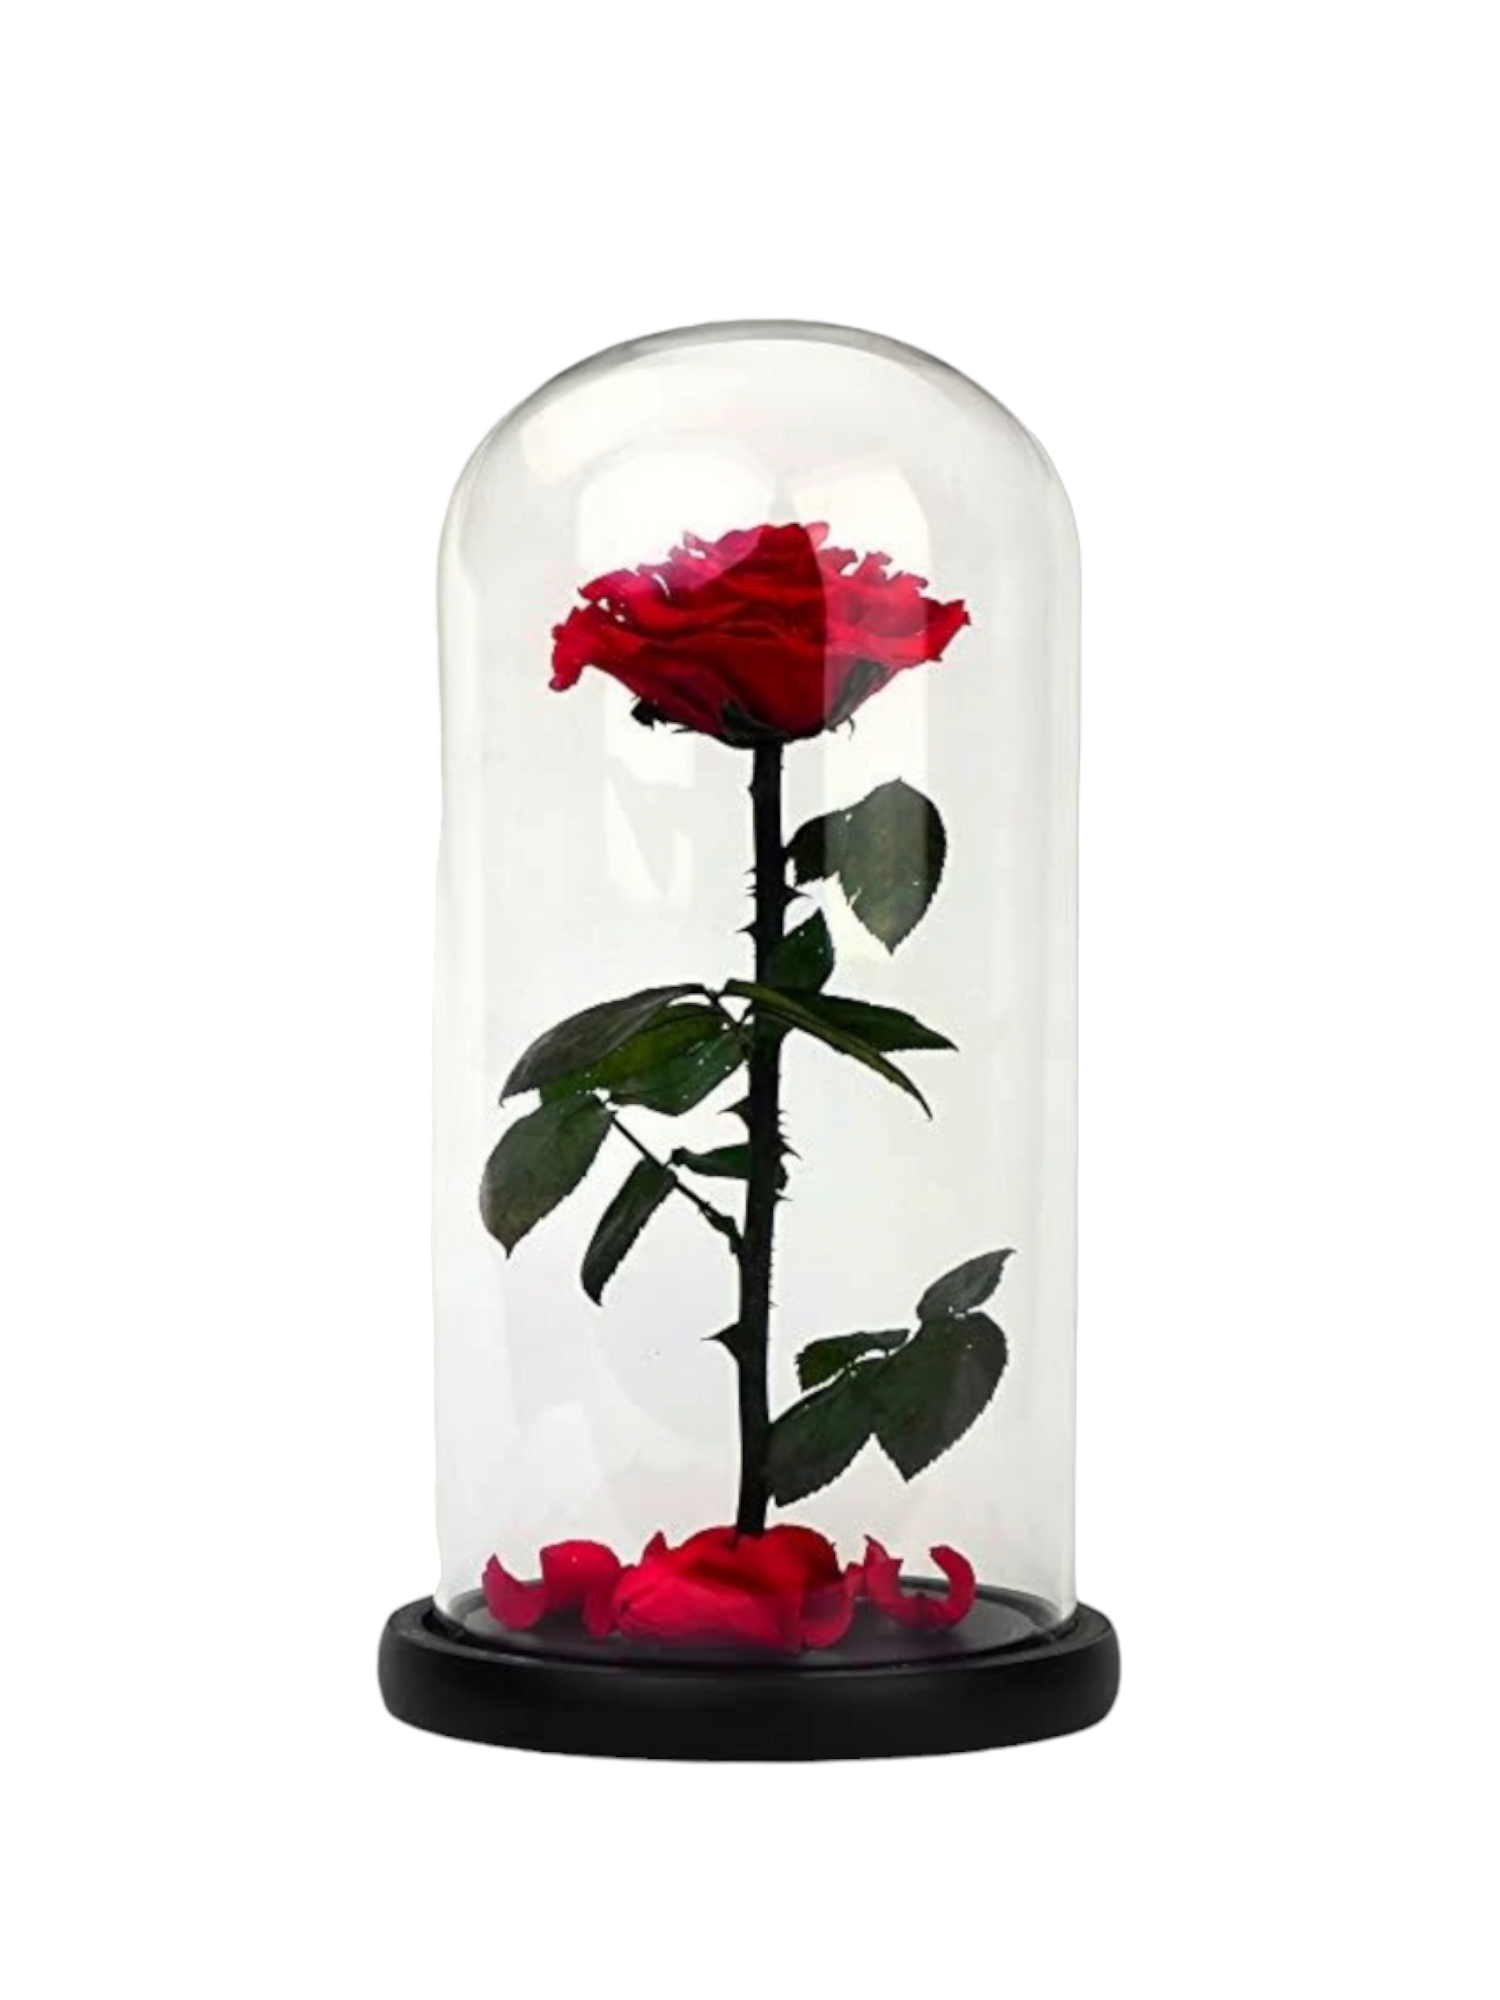 La Bella e La Bestia Rosa Eterna, Rosa Stabilizzata in Cupola di Vetro con  LED